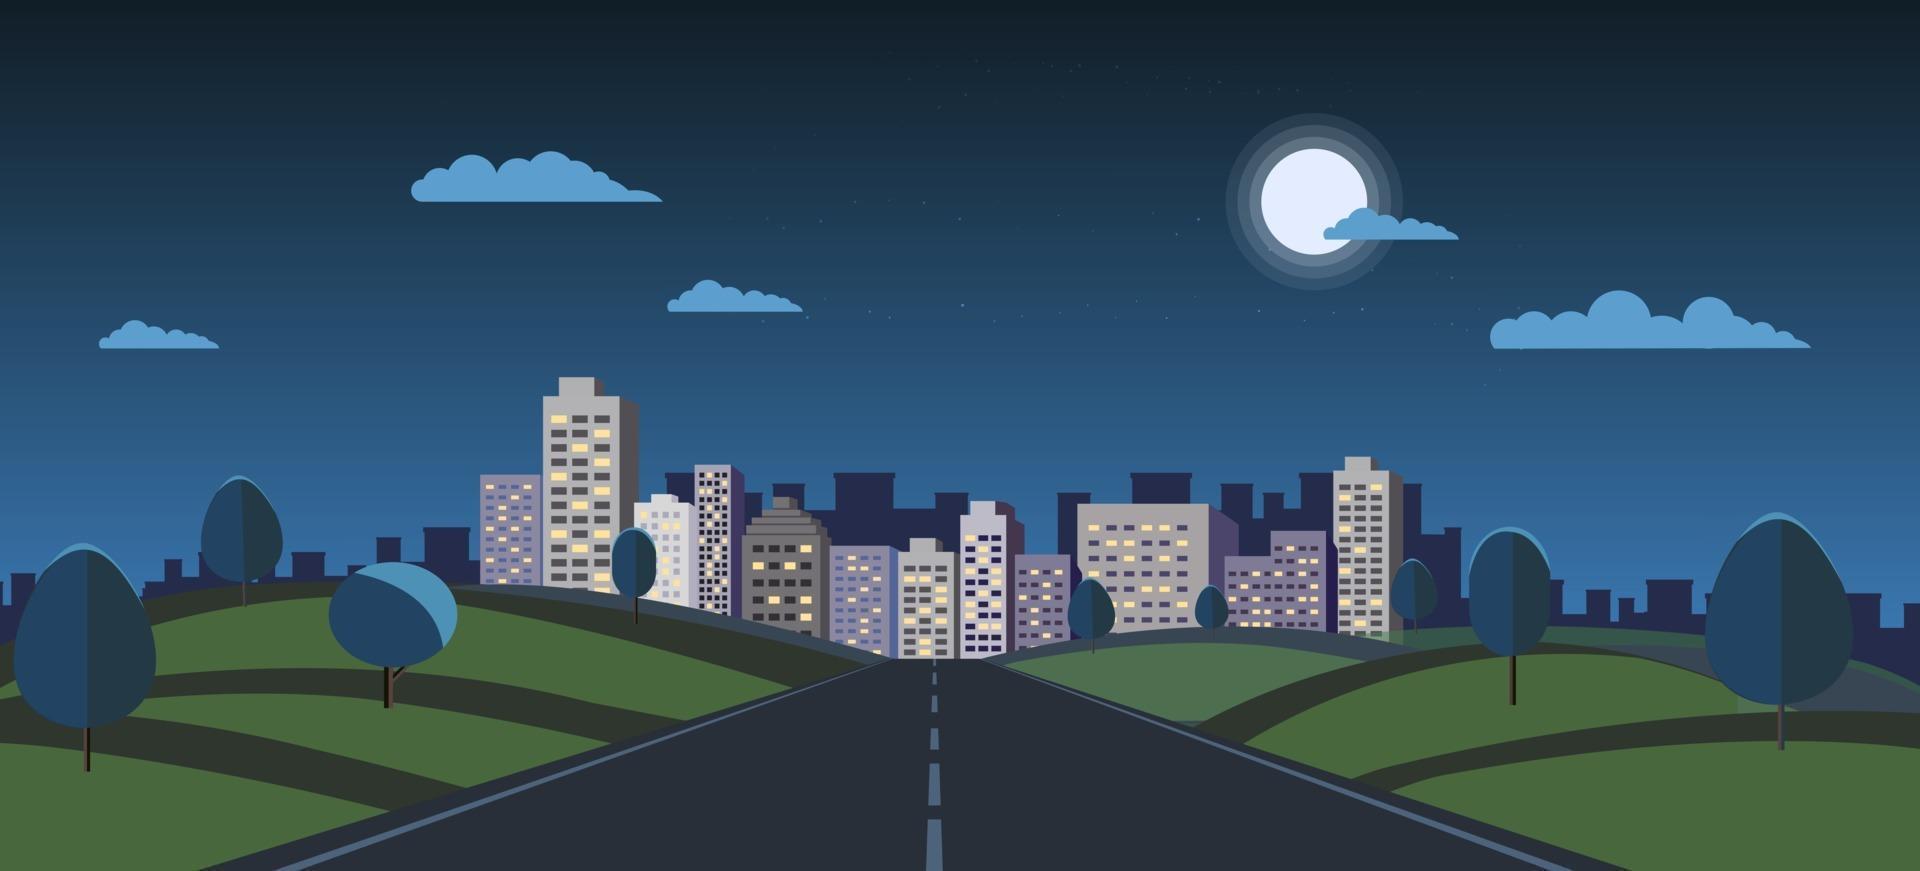 paesaggio urbano notturno con illustrazione vettoriale di paesaggio naturale. parco pubblico e città notturna con la luna e il cielo. scena oscura con la strada per la città. vista notturna dell'edificio